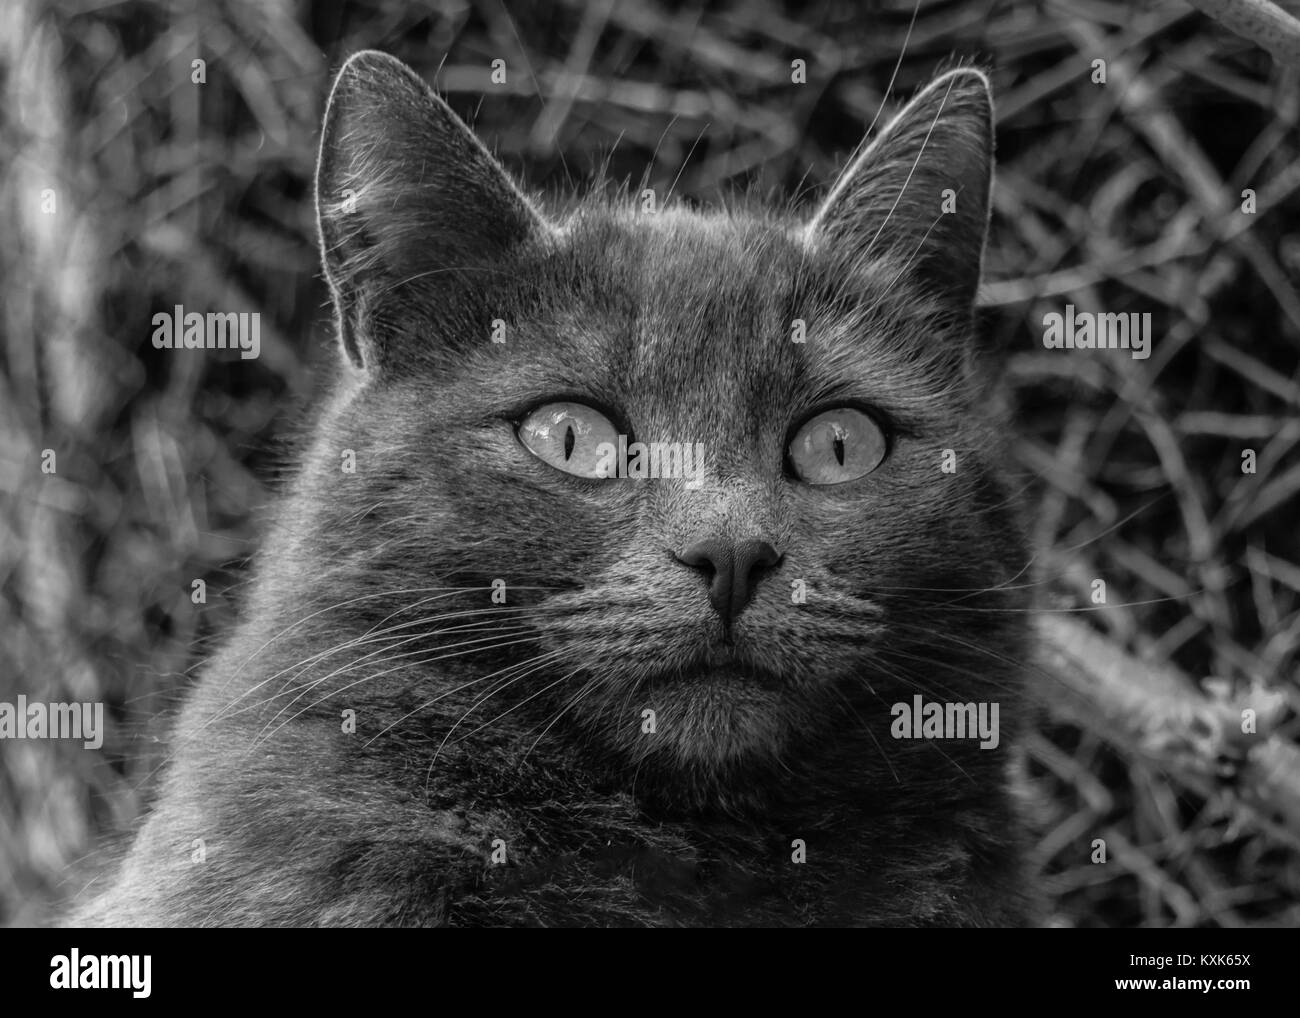 Ritratto di un attento gatto, monocromatico. Primo piano di un gatto grigio, immagine in bianco e nero. Foto Stock